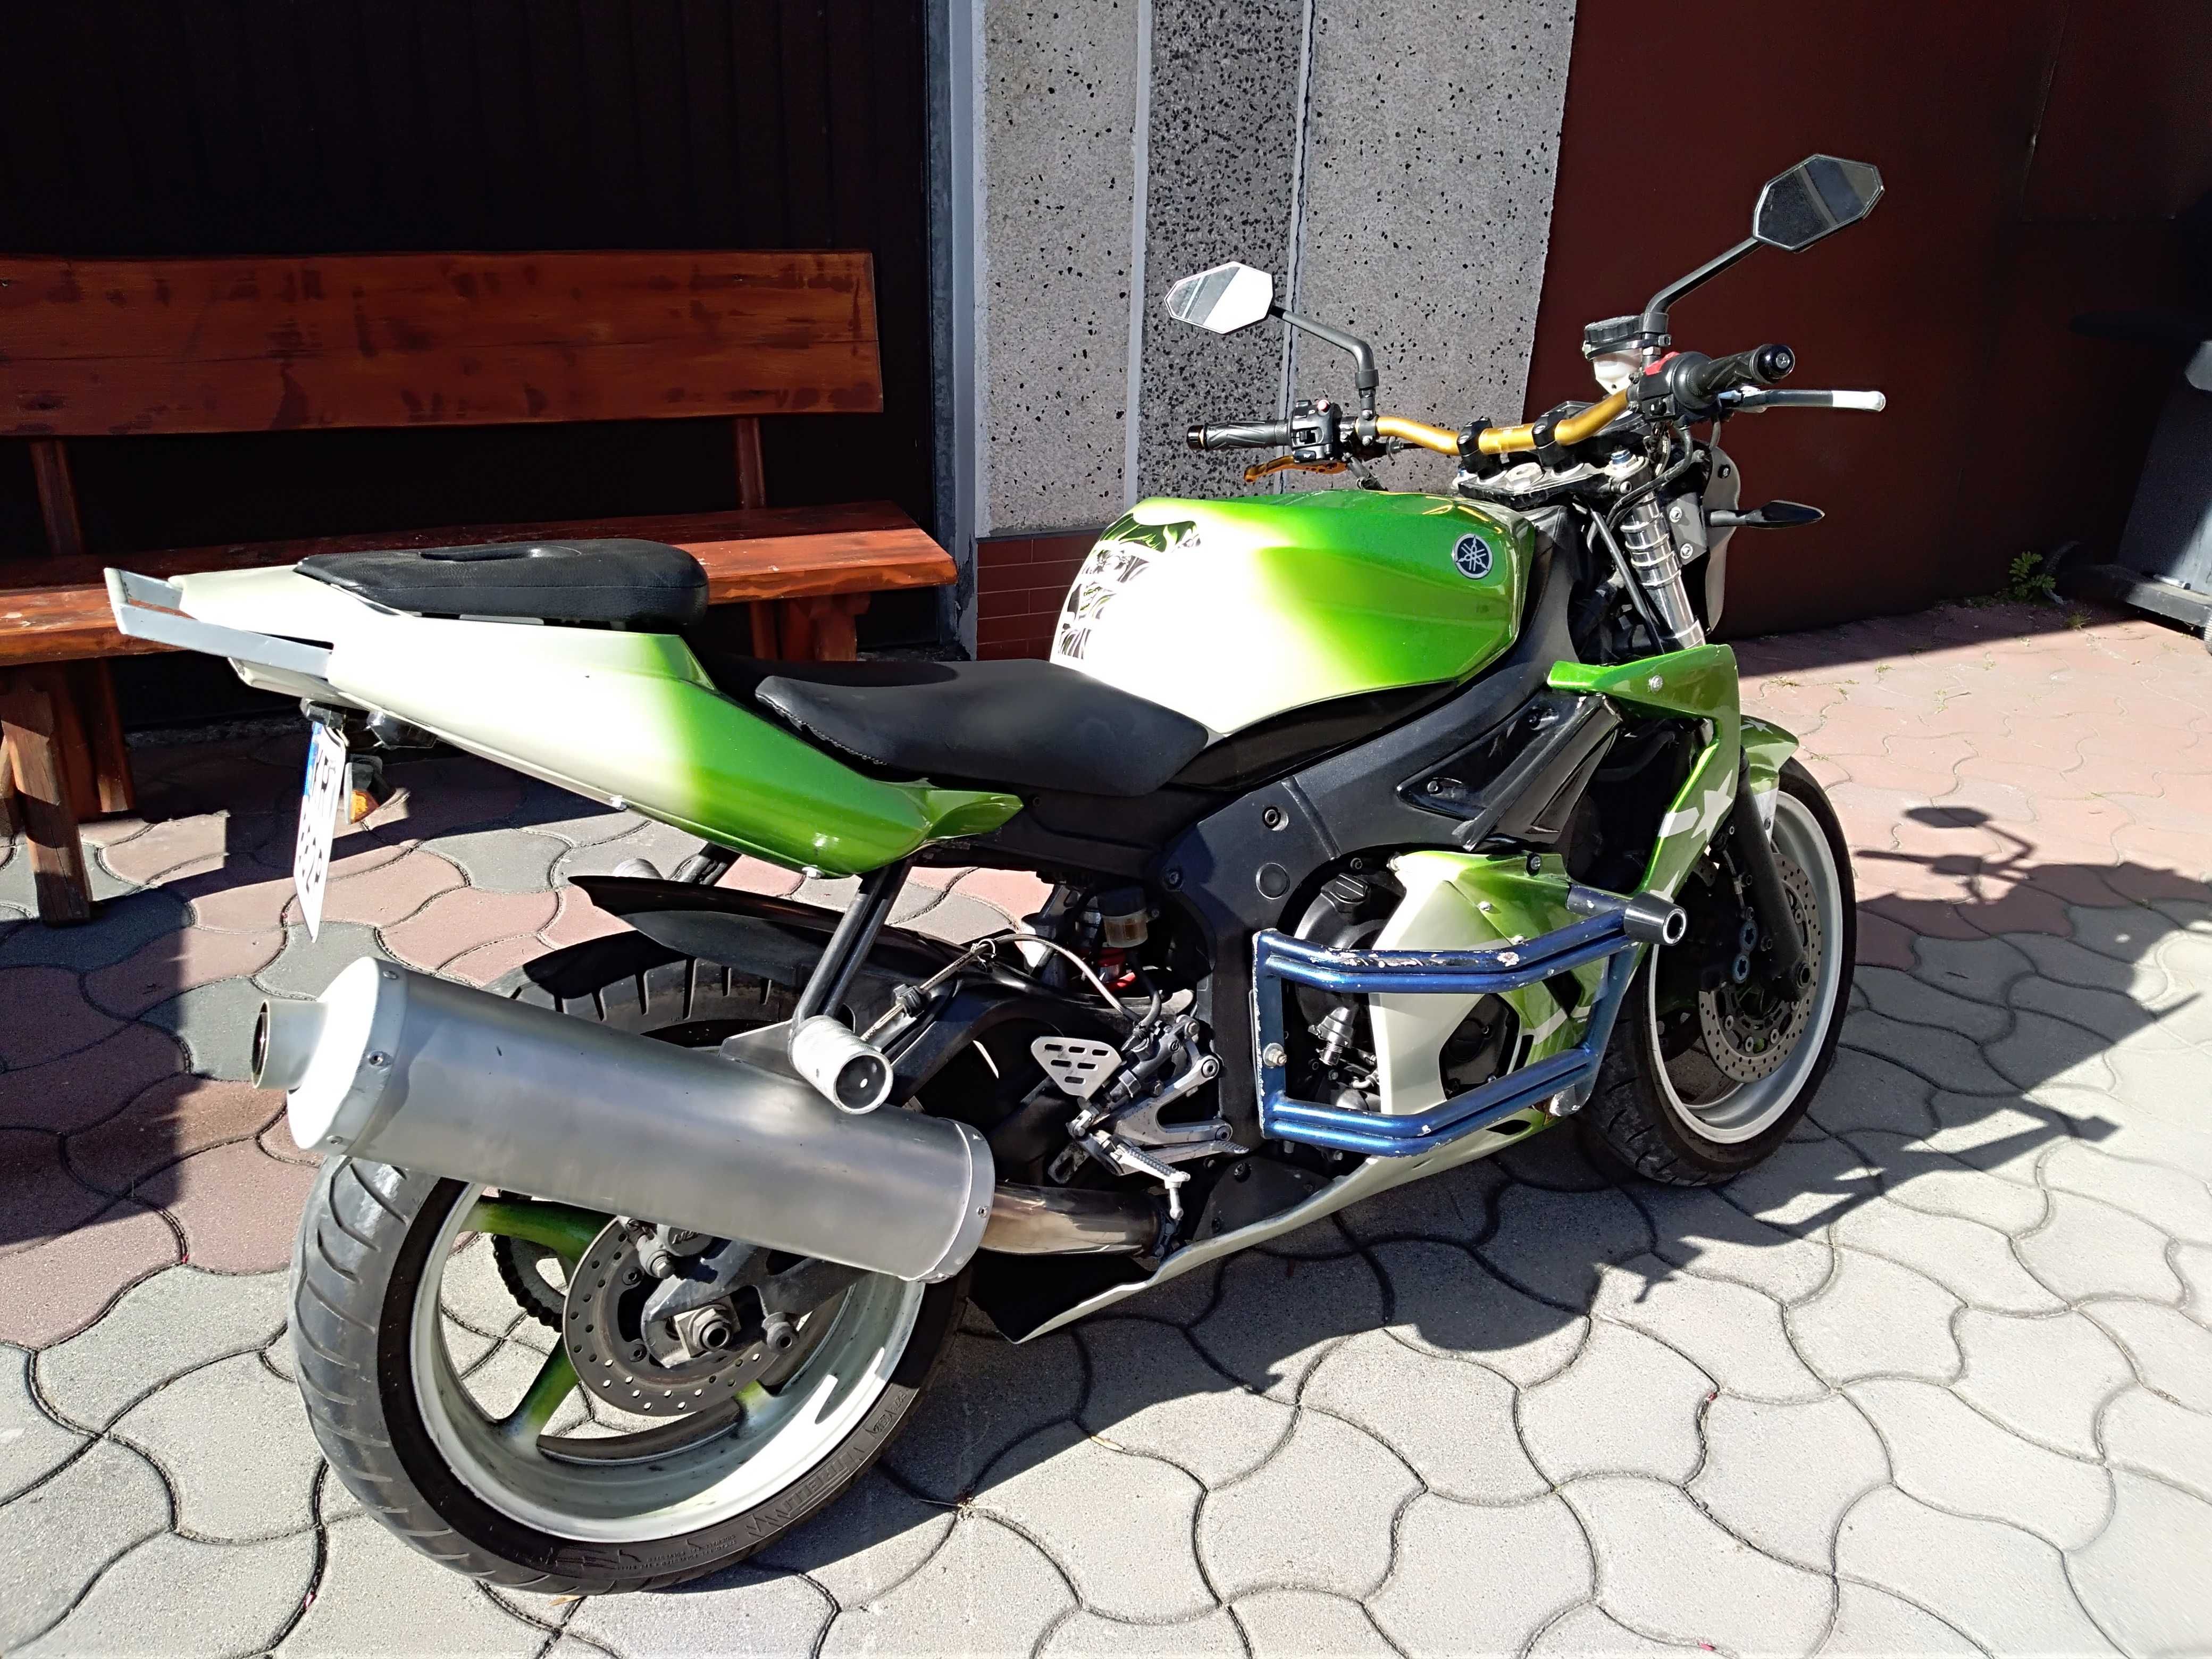 Yamaha R6 Naked 2003r.  30tys. km Ważne OC i przegląd +dodatki.